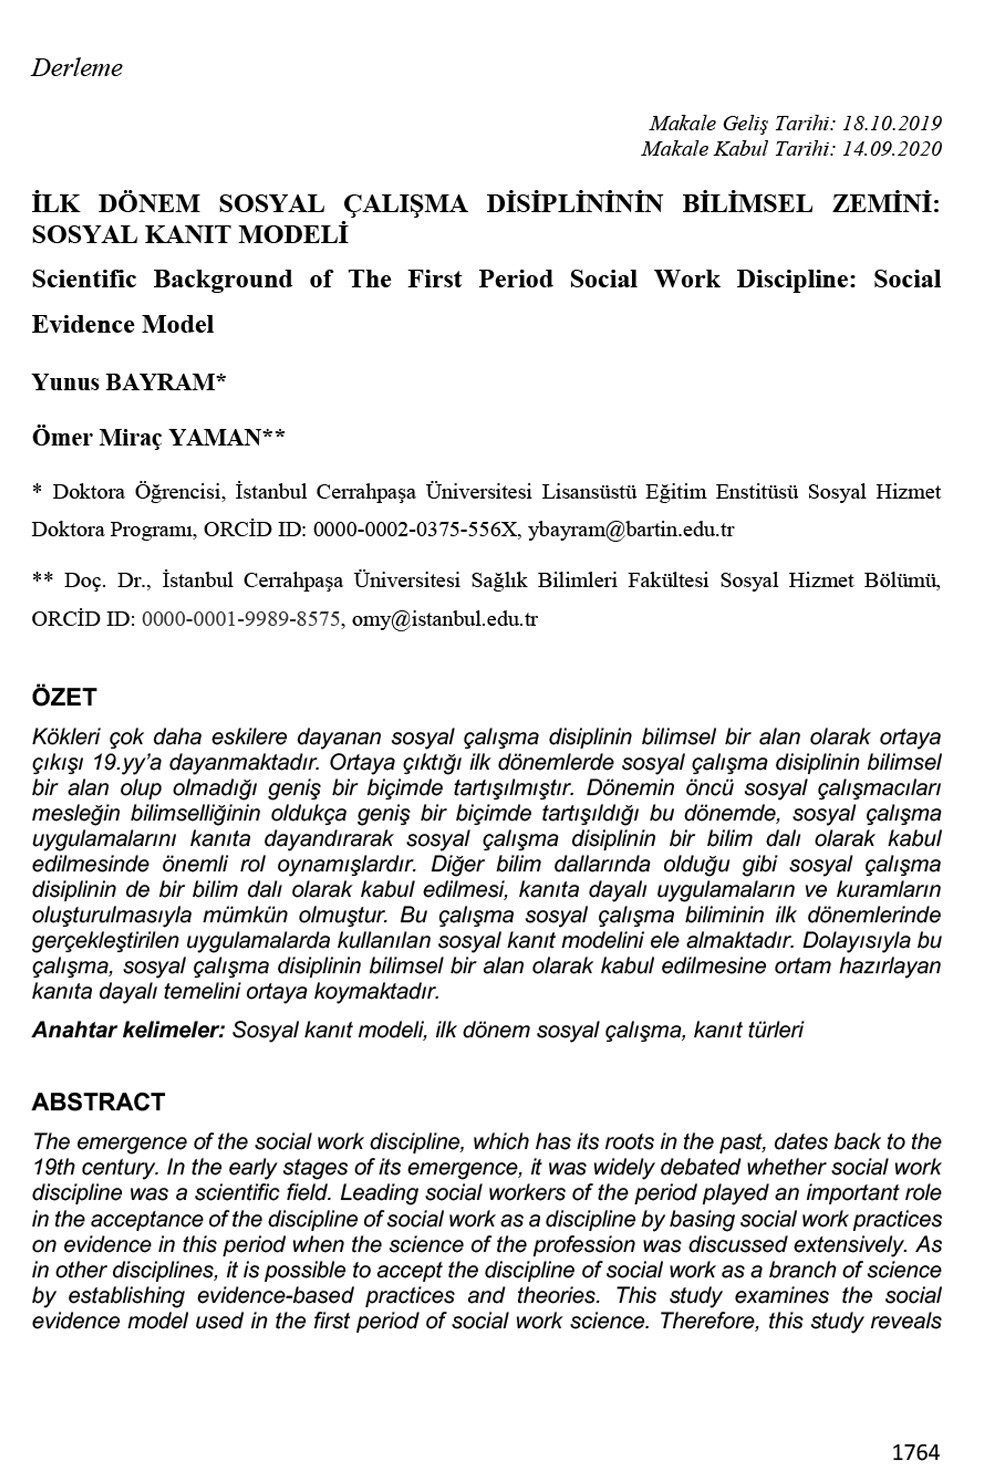 İlk Dönem Sosyal Çalışma Disiplininin Bilimsel Zemini: Sosyal Kanıt Modeli